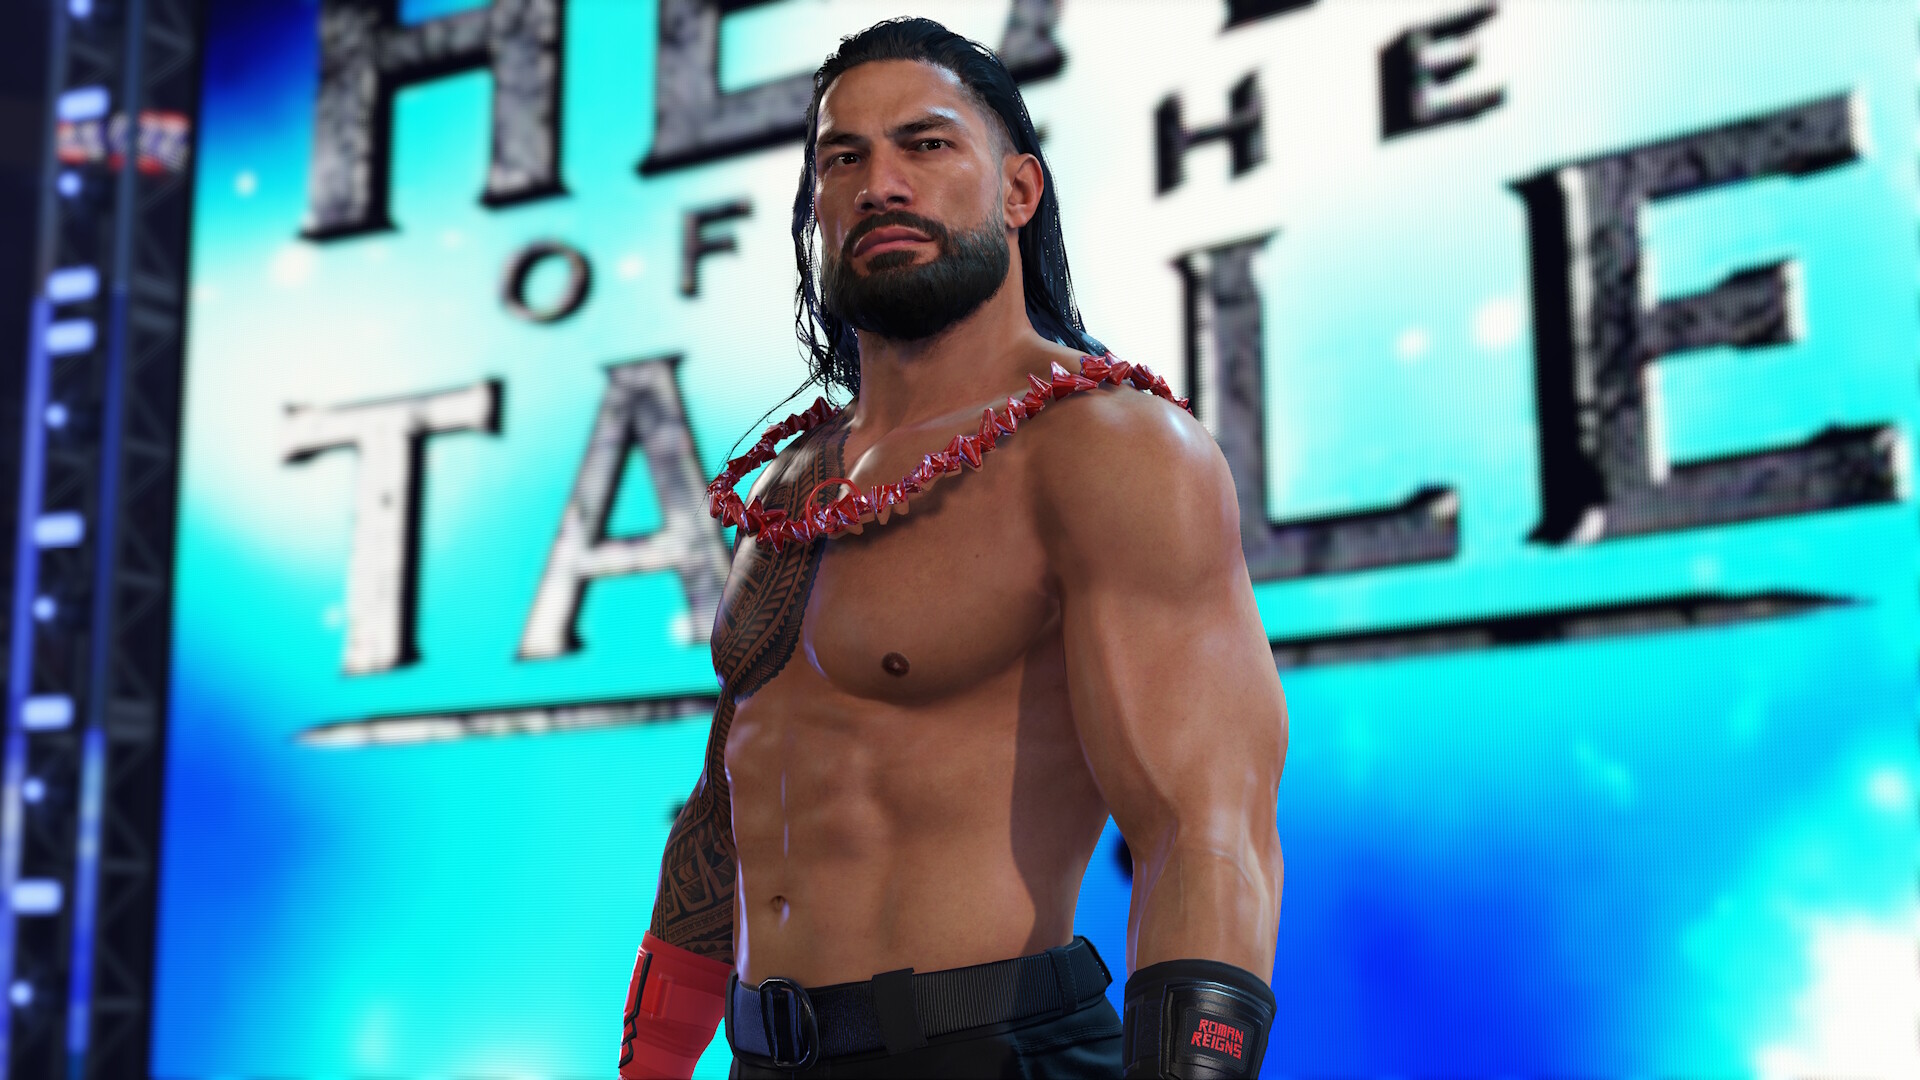 Udviklerne af WWE 2K24 har udgivet en ny trailer til spillet, som viser to storylines: Unleashed og Undisputed